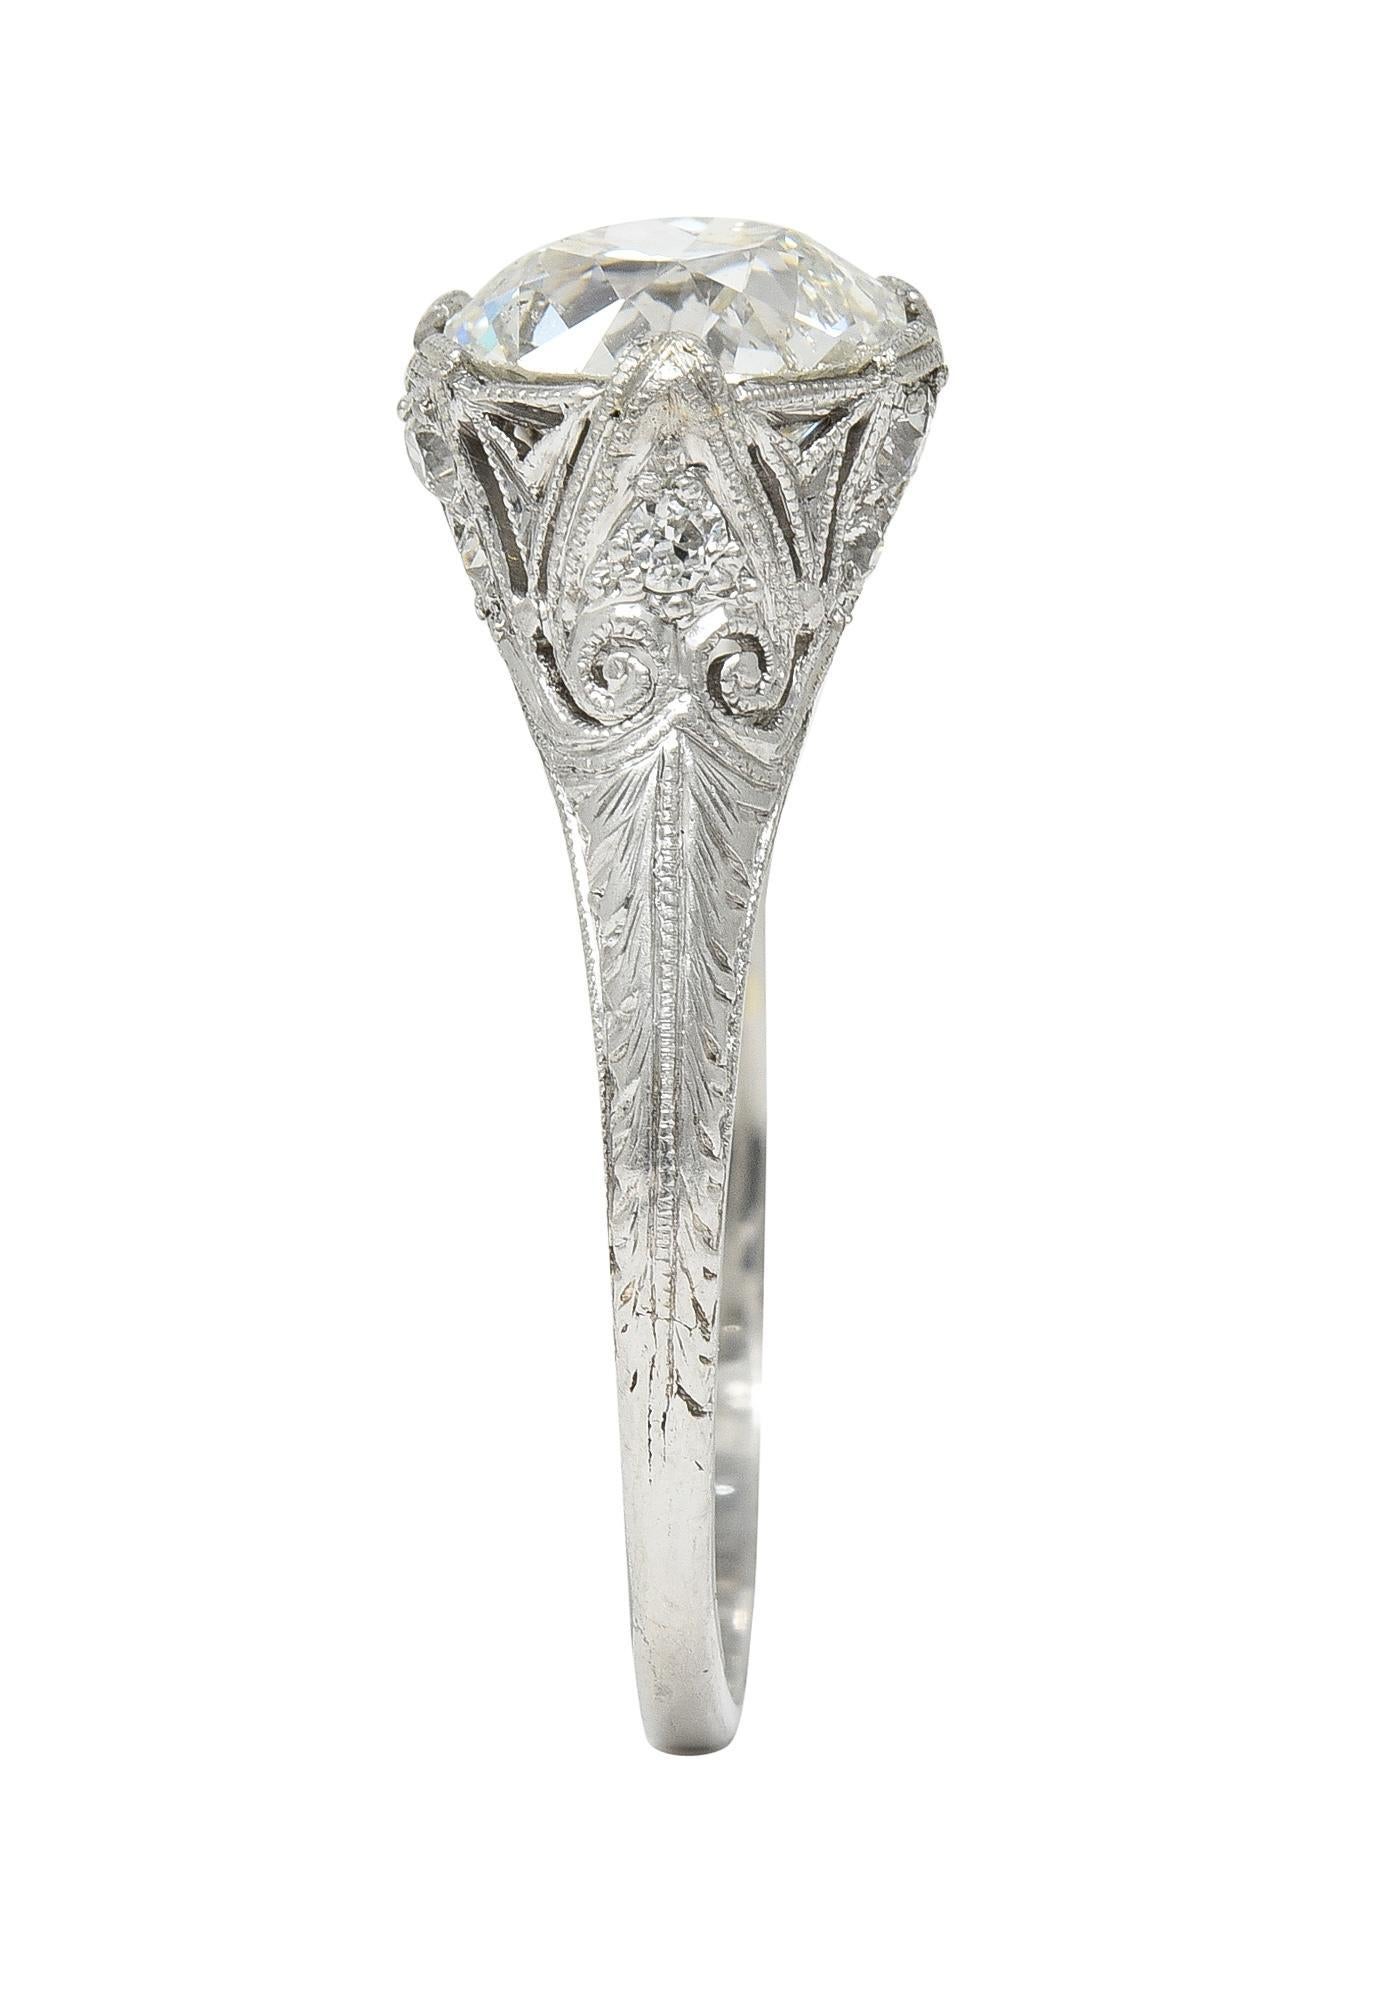 Edwardian 2.36 CTW Old European Cut Diamond Platinum Antique Engagement Ring For Sale 6